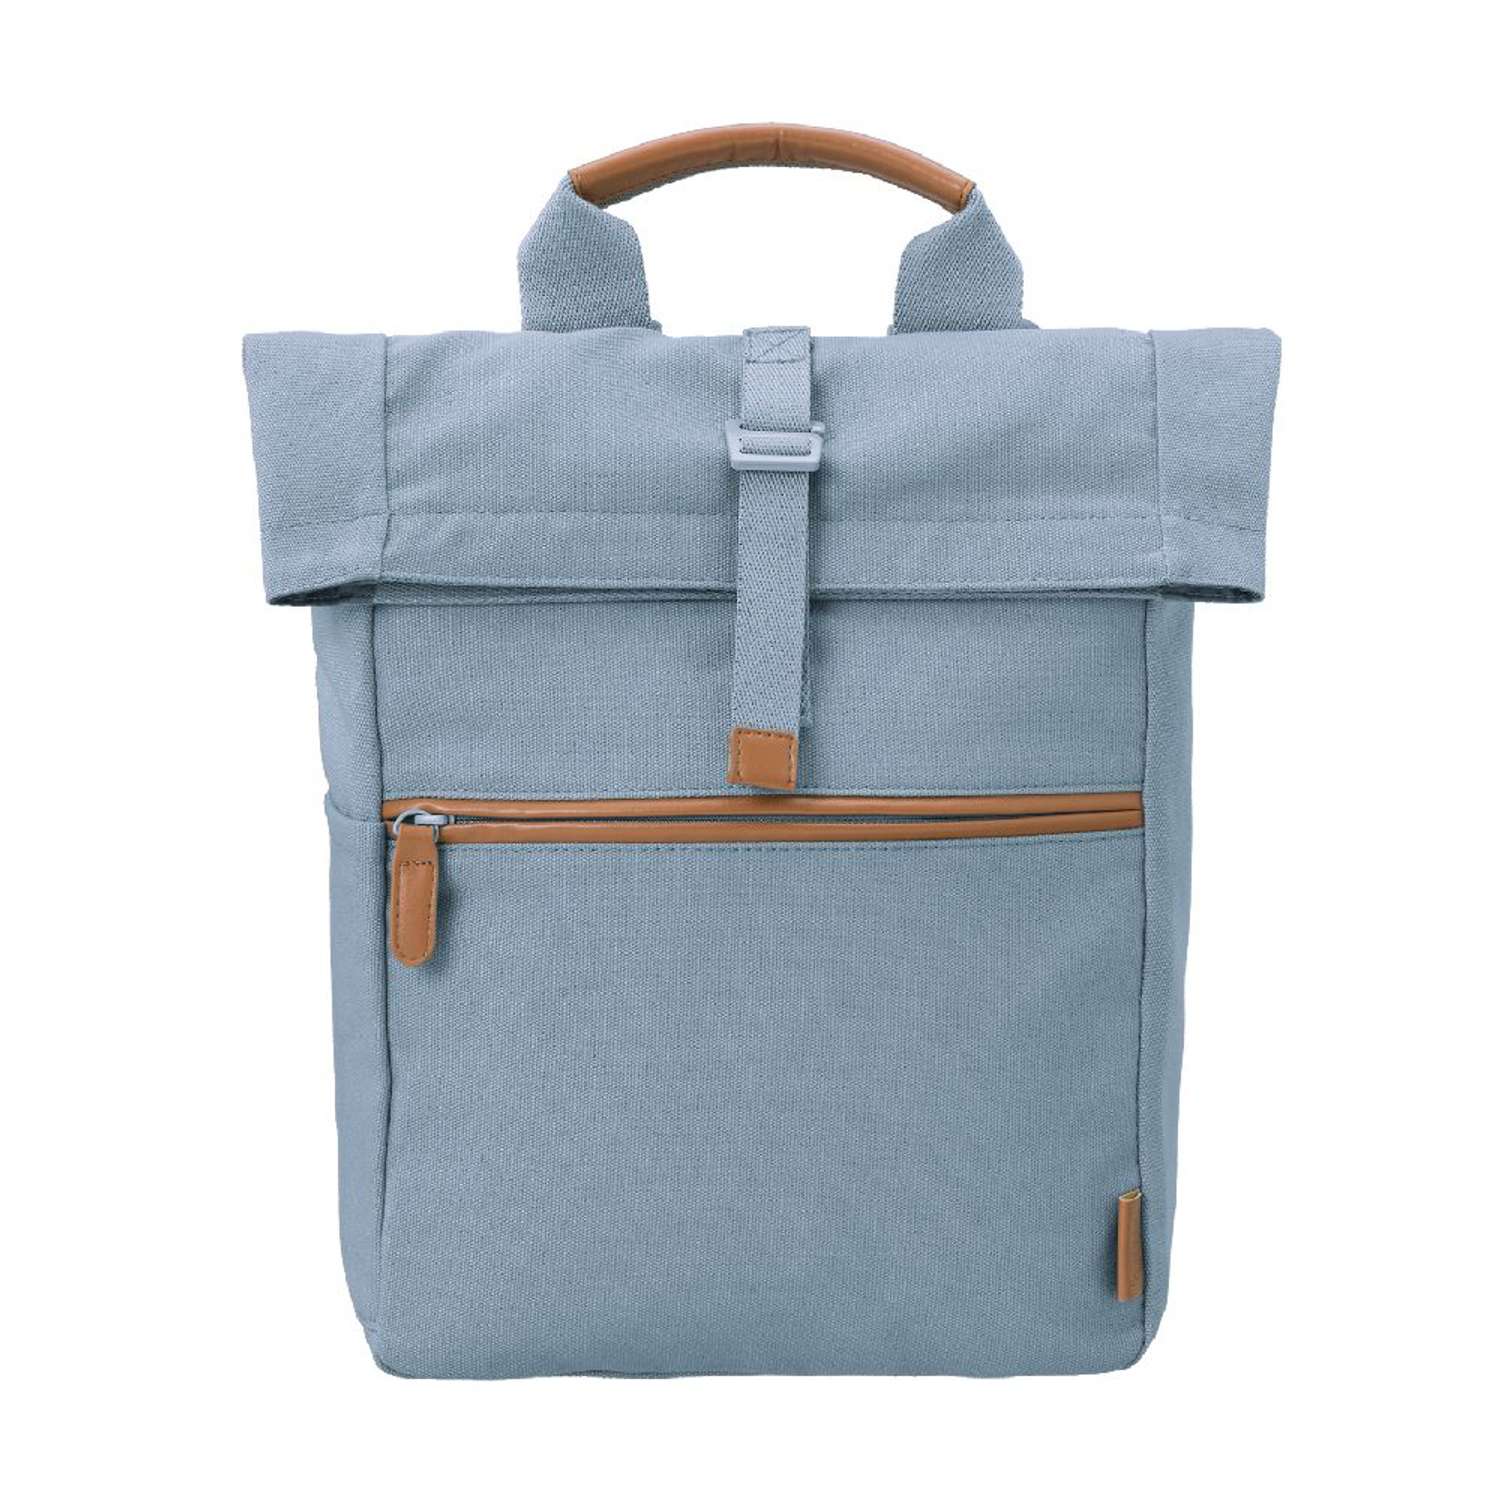 Рюкзак Fresk Uni голубой туман водонепроницаемый маленький - фото 3